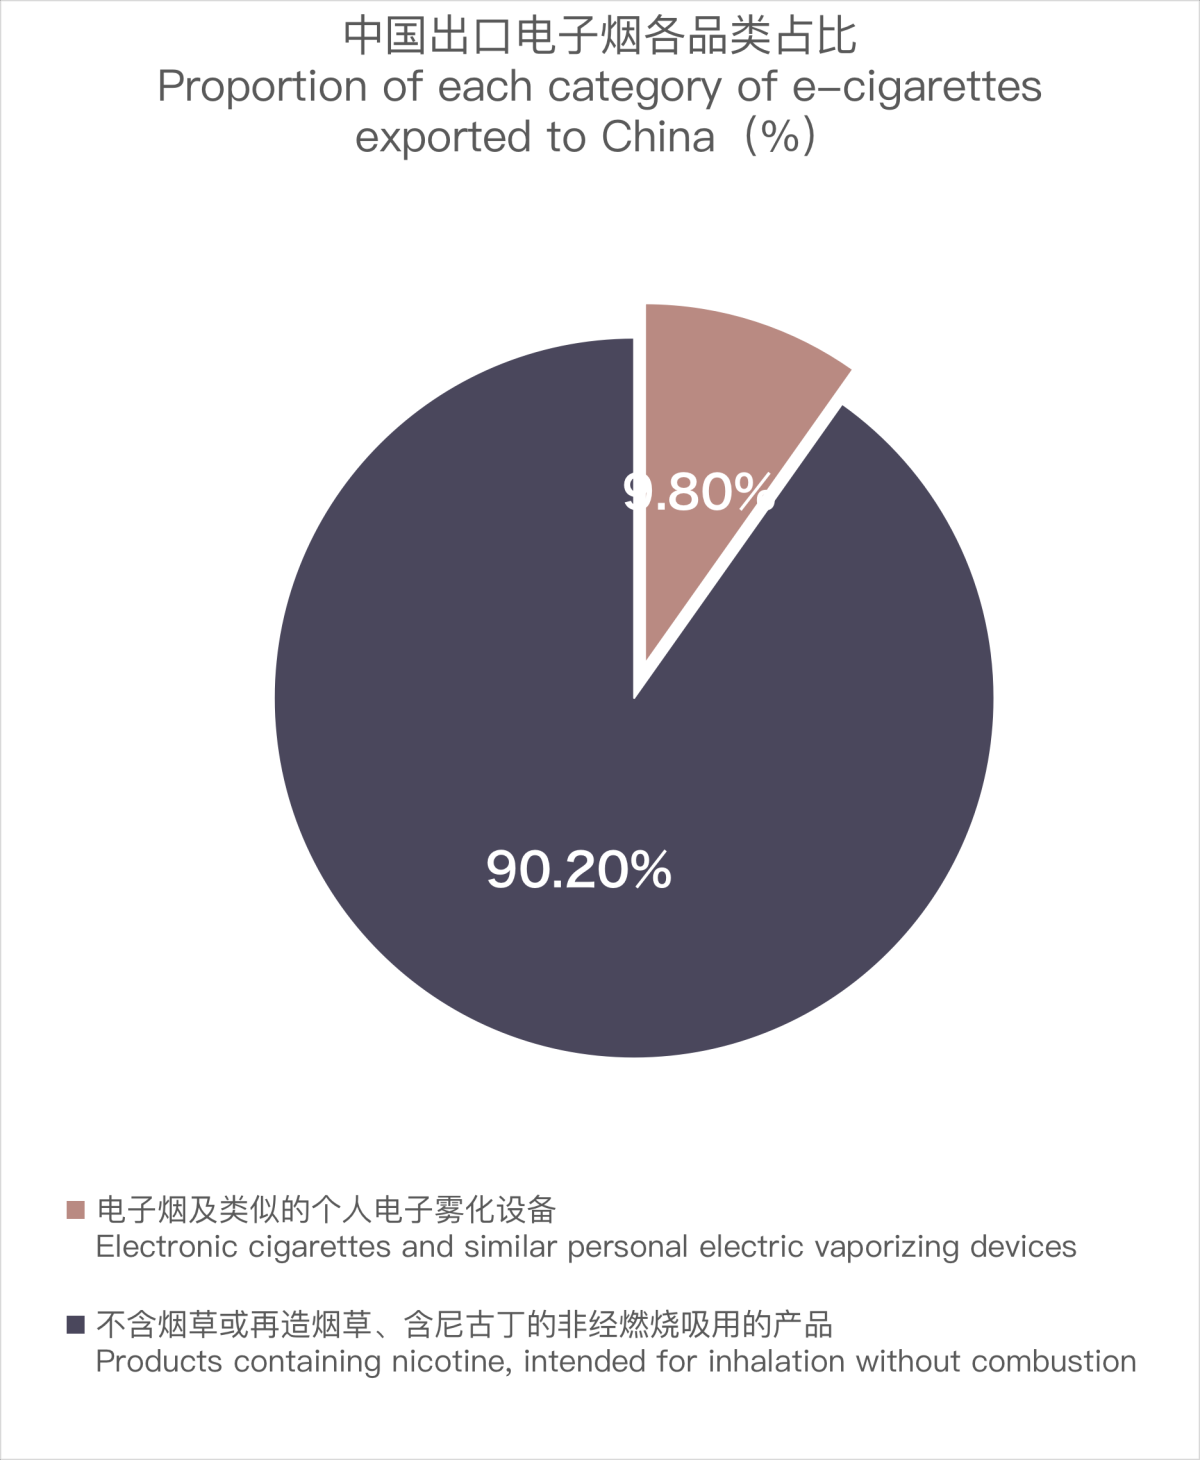 2月中国出口爱尔兰电子烟约为546万美元 环比下降6.01%